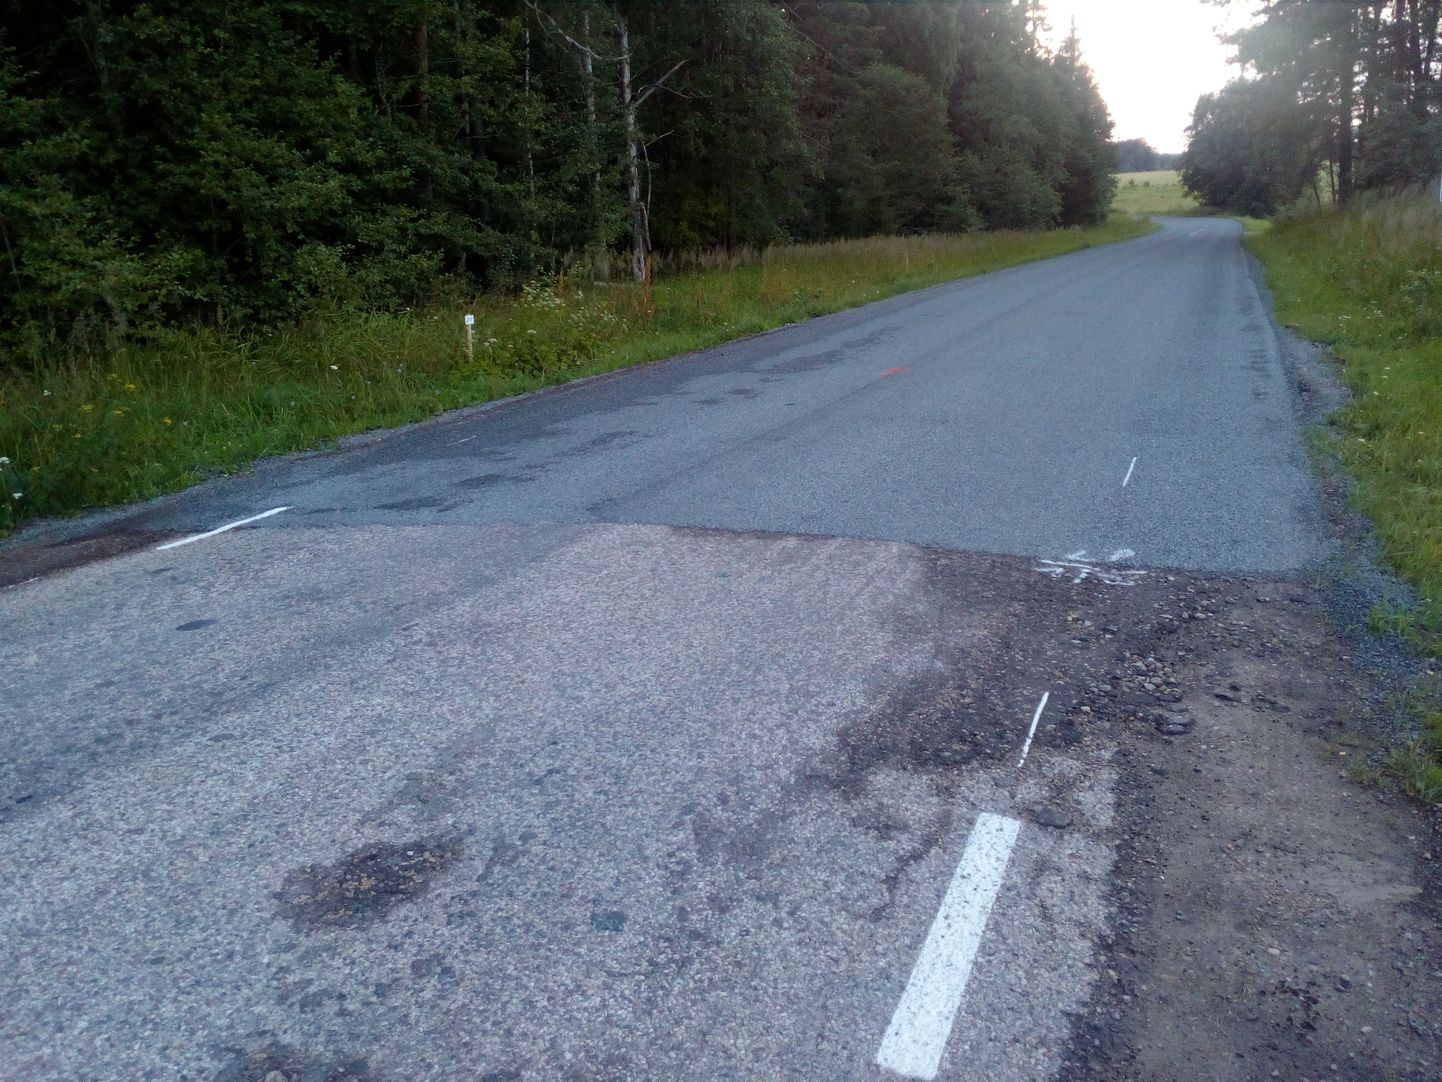 Vana Tartu-Võru maantee ehk Postitee. Pildil seni veel remontimata teelõik läheb üle remonditud teelõigule.